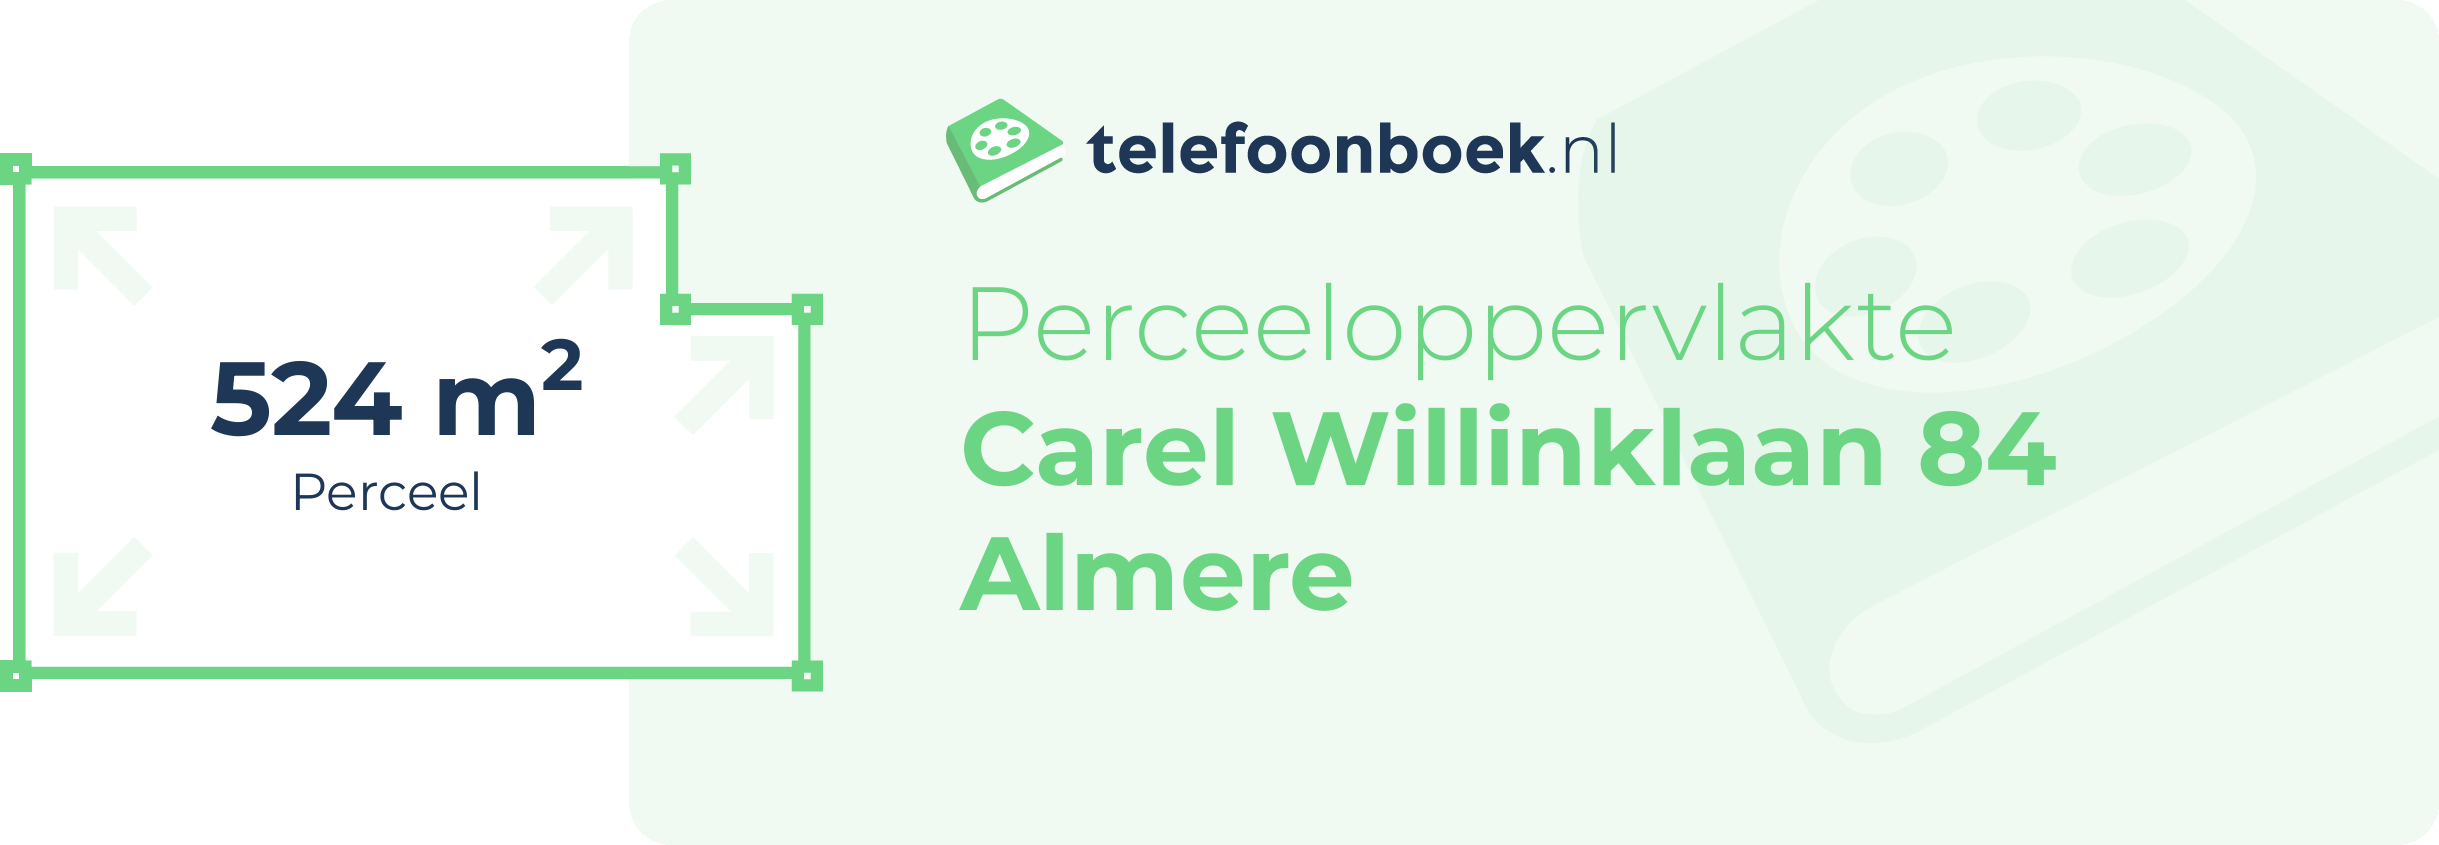 Perceeloppervlakte Carel Willinklaan 84 Almere